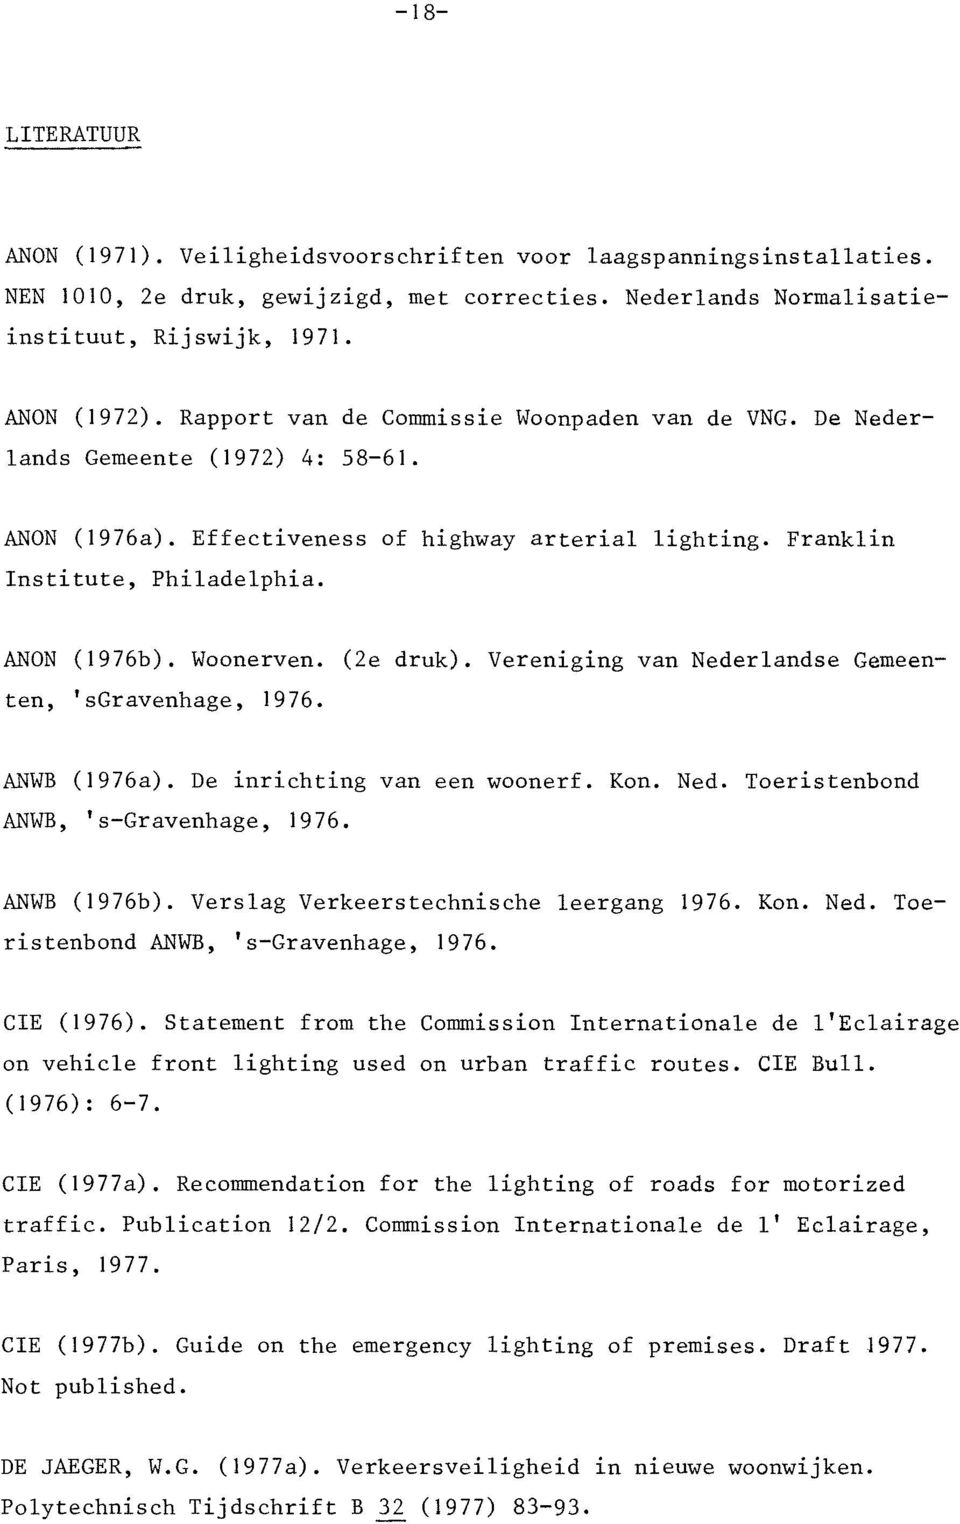 Woonerven. (2e druk). Vereniging van Nederlandse Gemeenten, 'sgravenhage, 1976. ANWB (1976a). De inrichting van een woonerf. Kon. Ned. Toeristenbond ANWB, 's-gravenhage, 1976. ANWB (1976b).